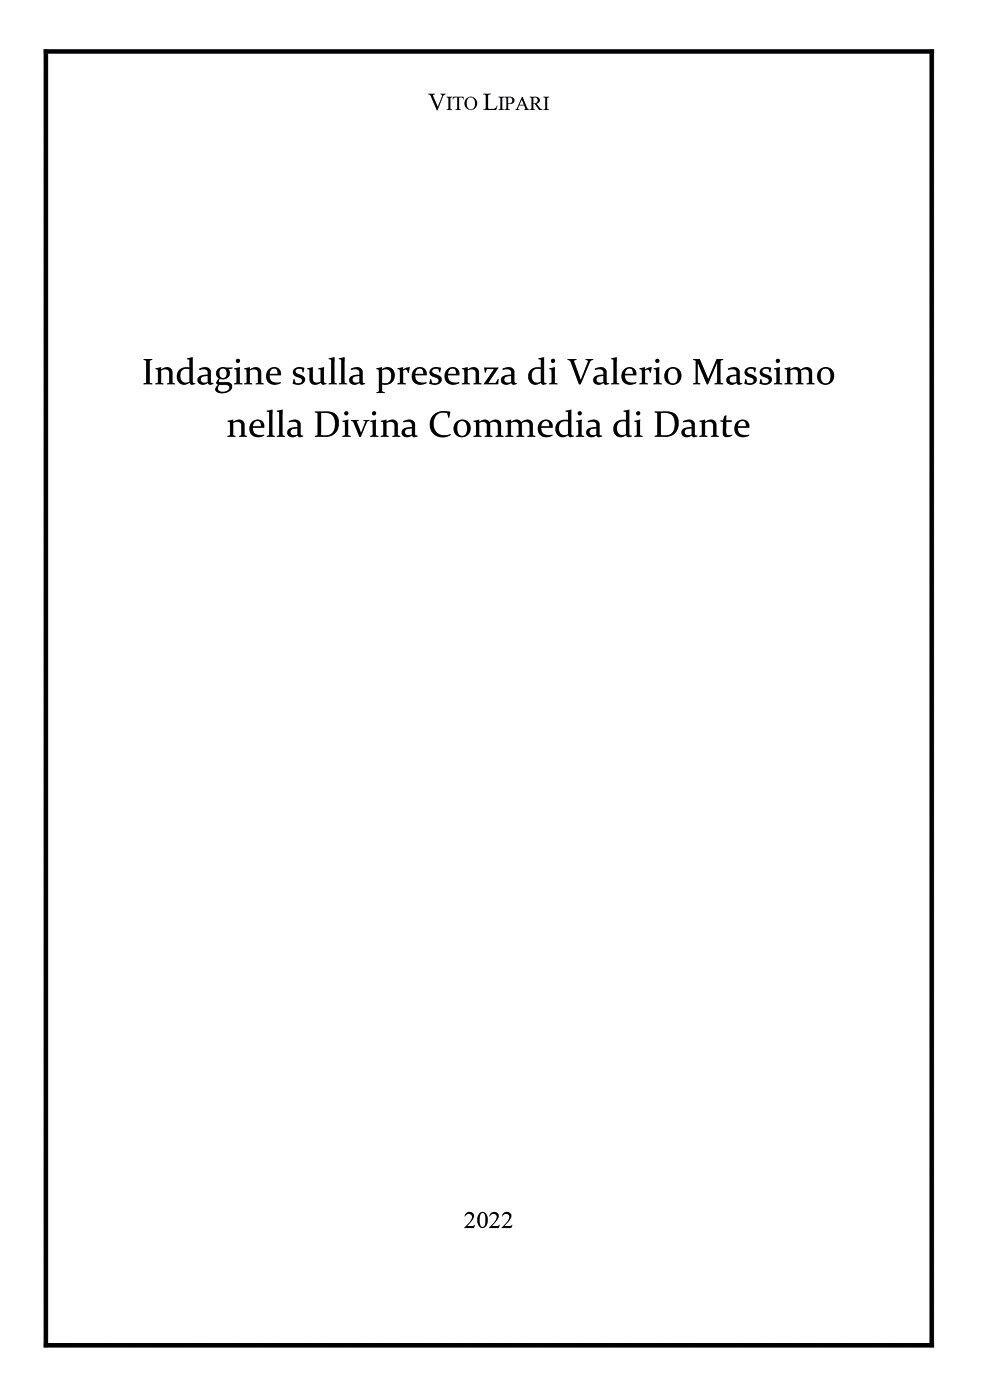 Indagine sulla presenza di Valerio Massimo nella Divina Commedia di Dante di Vit